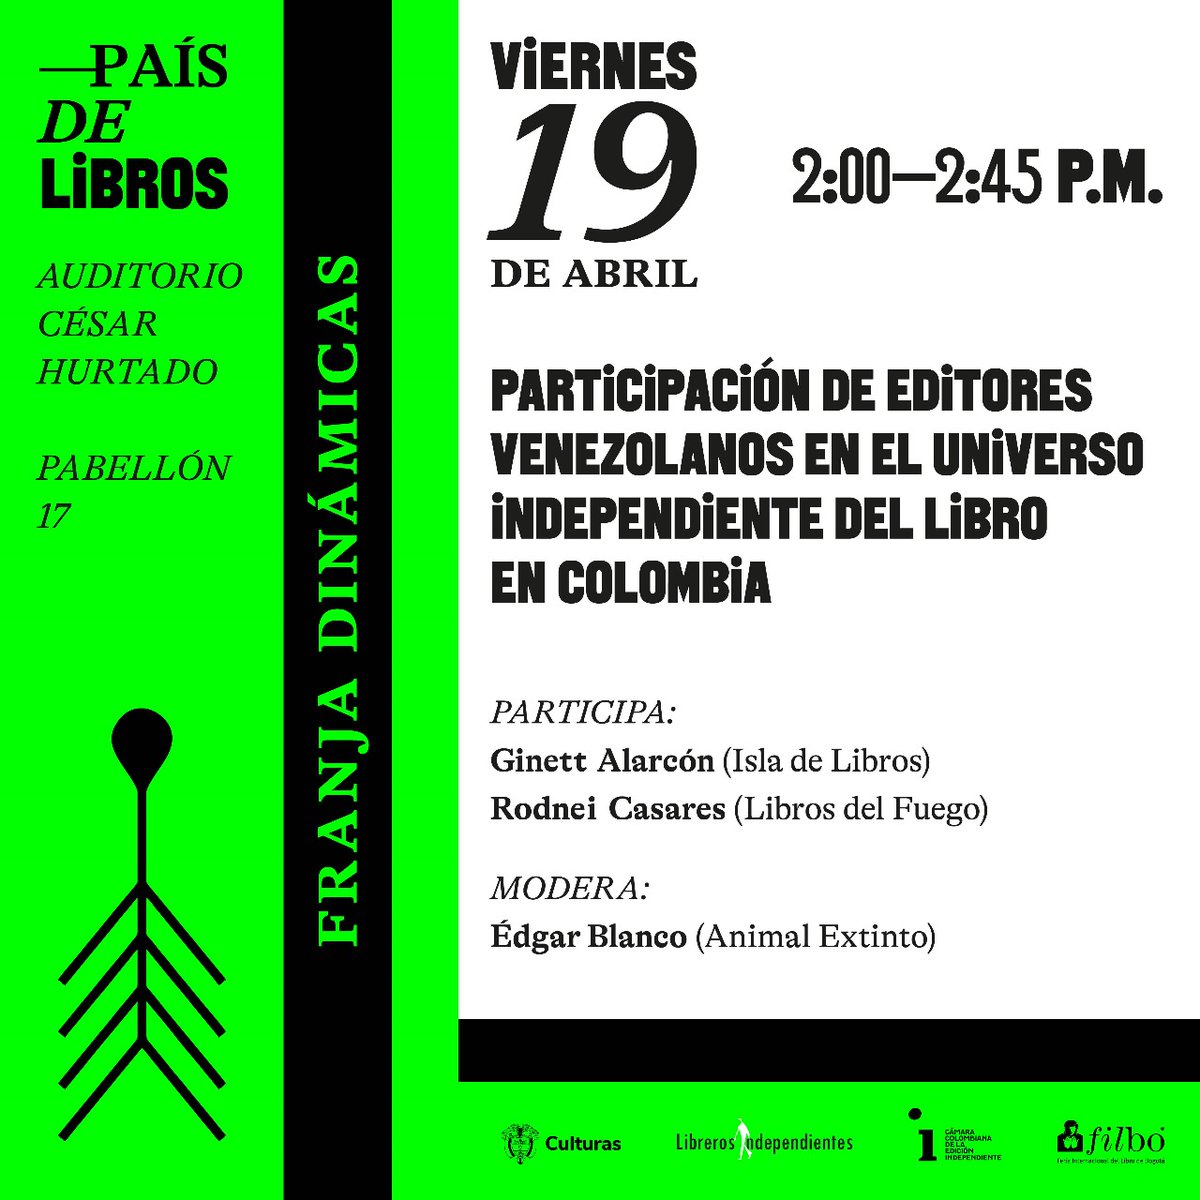 Mañana estaremos en @FILBogota conversando con Ginnet (de @isladelibros_) y Edgar (de @animalextintoed) sobre la participación de los editores venezolanos en el universo del libro independiente en Colombia. ¡Les esperamos!